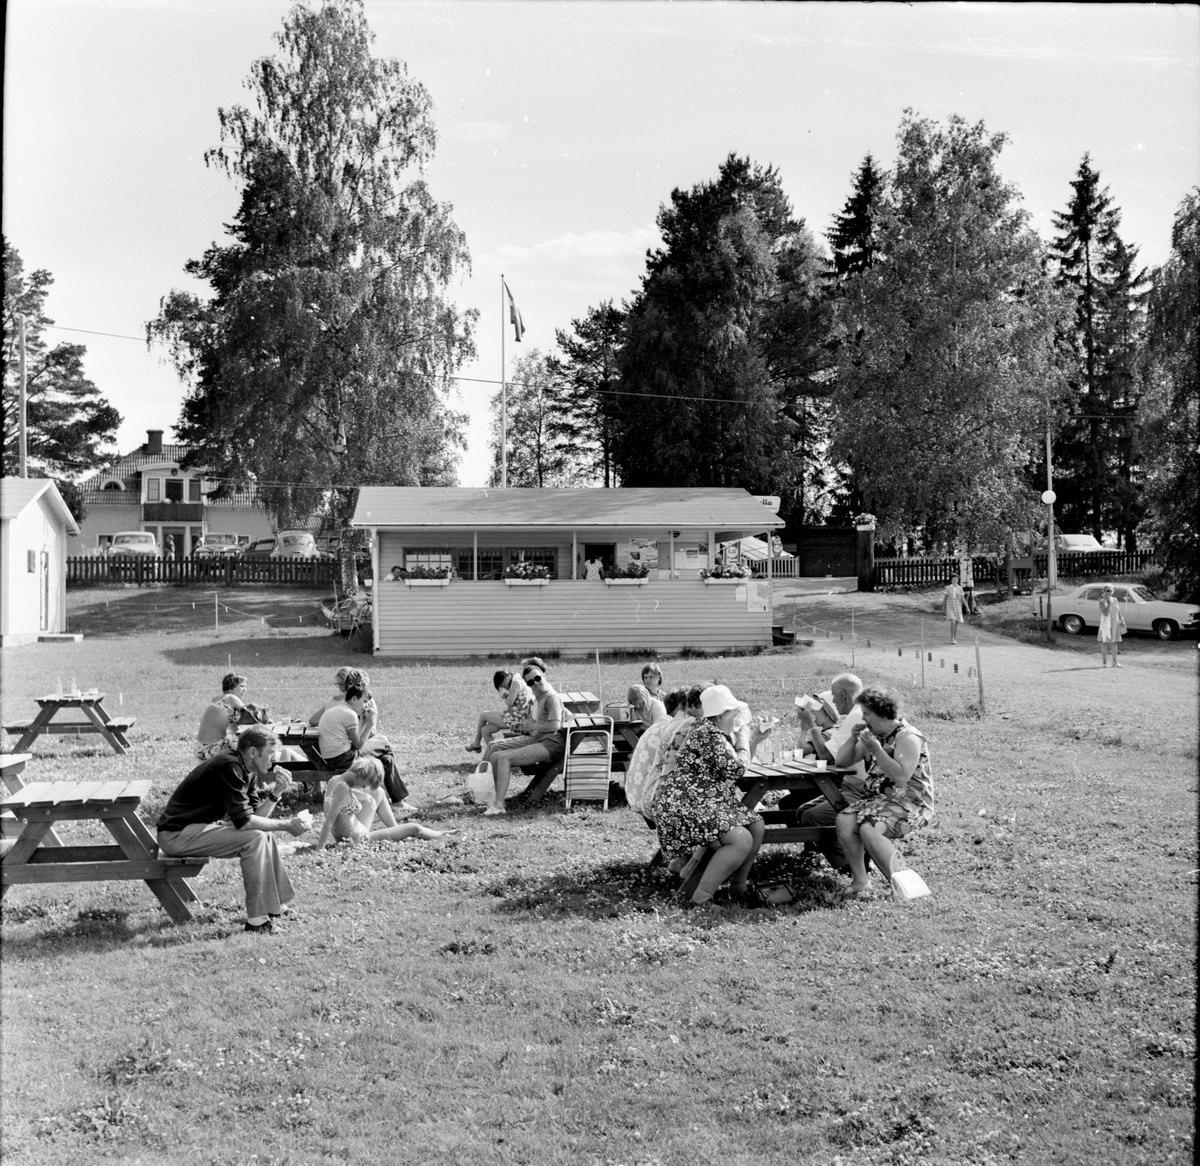 Arbrå,
Orbaden camping,
Juli 1970